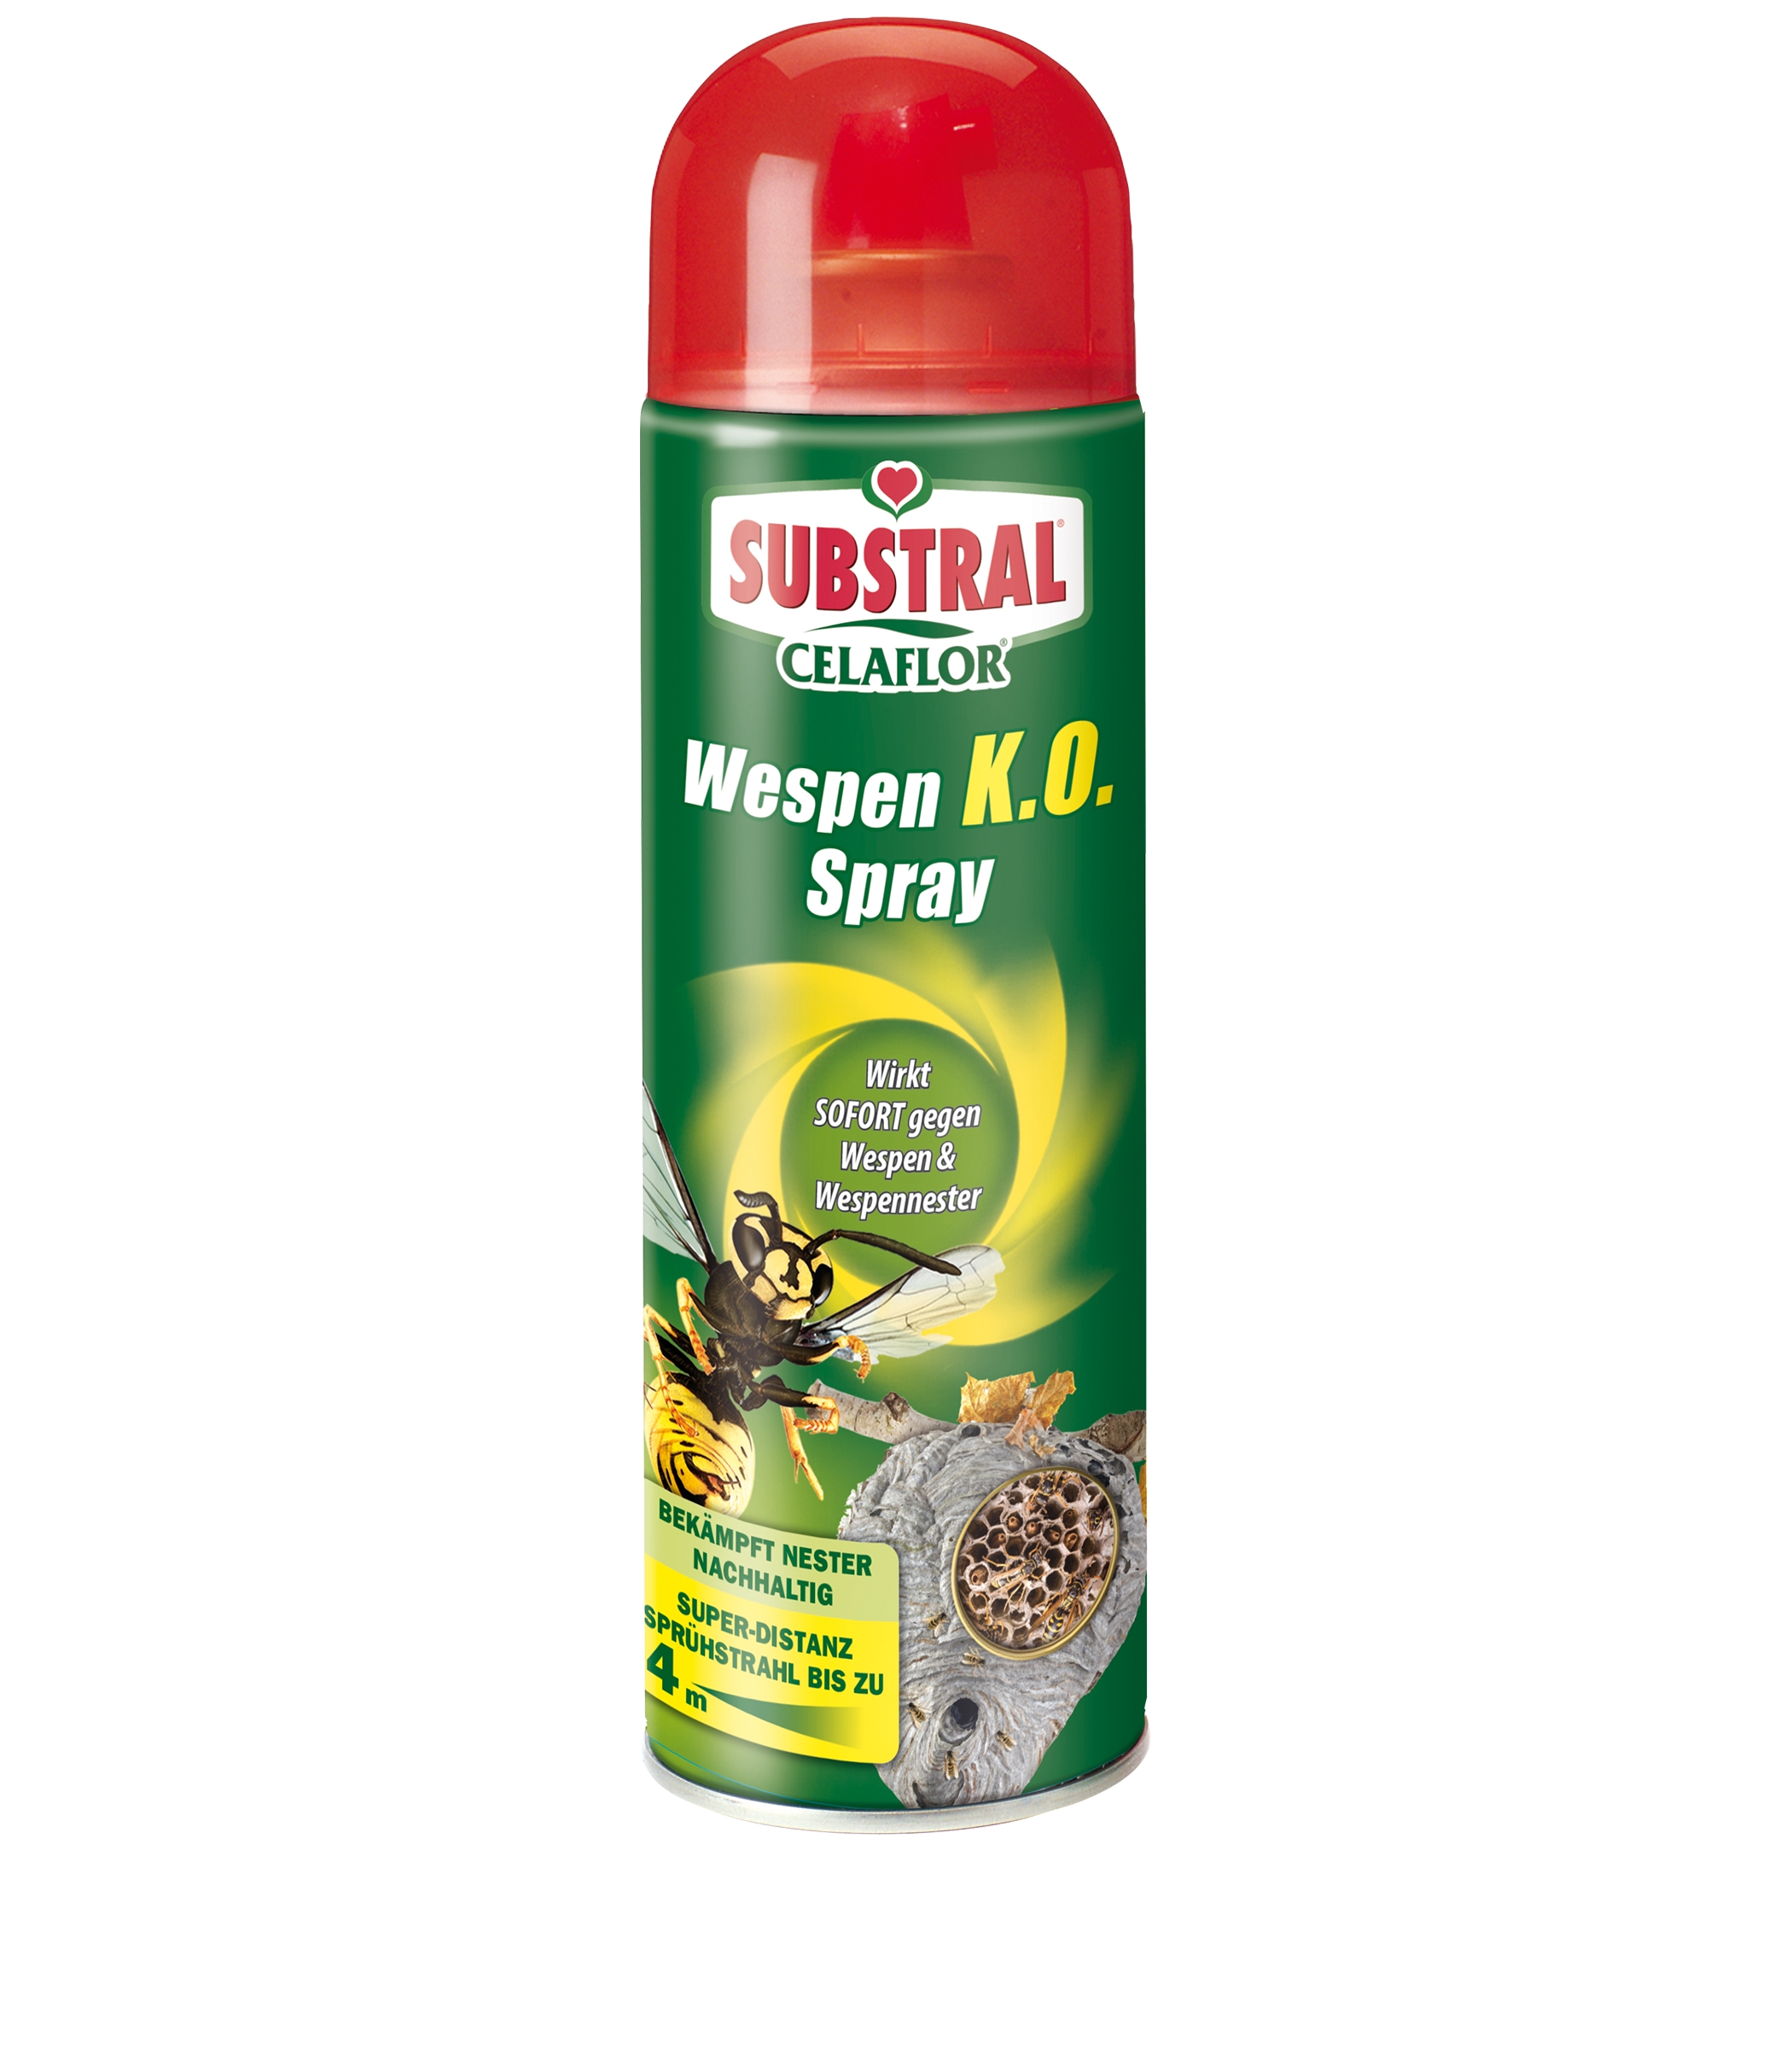 Substral Celaflor Wespen K.O. Spray 500ml